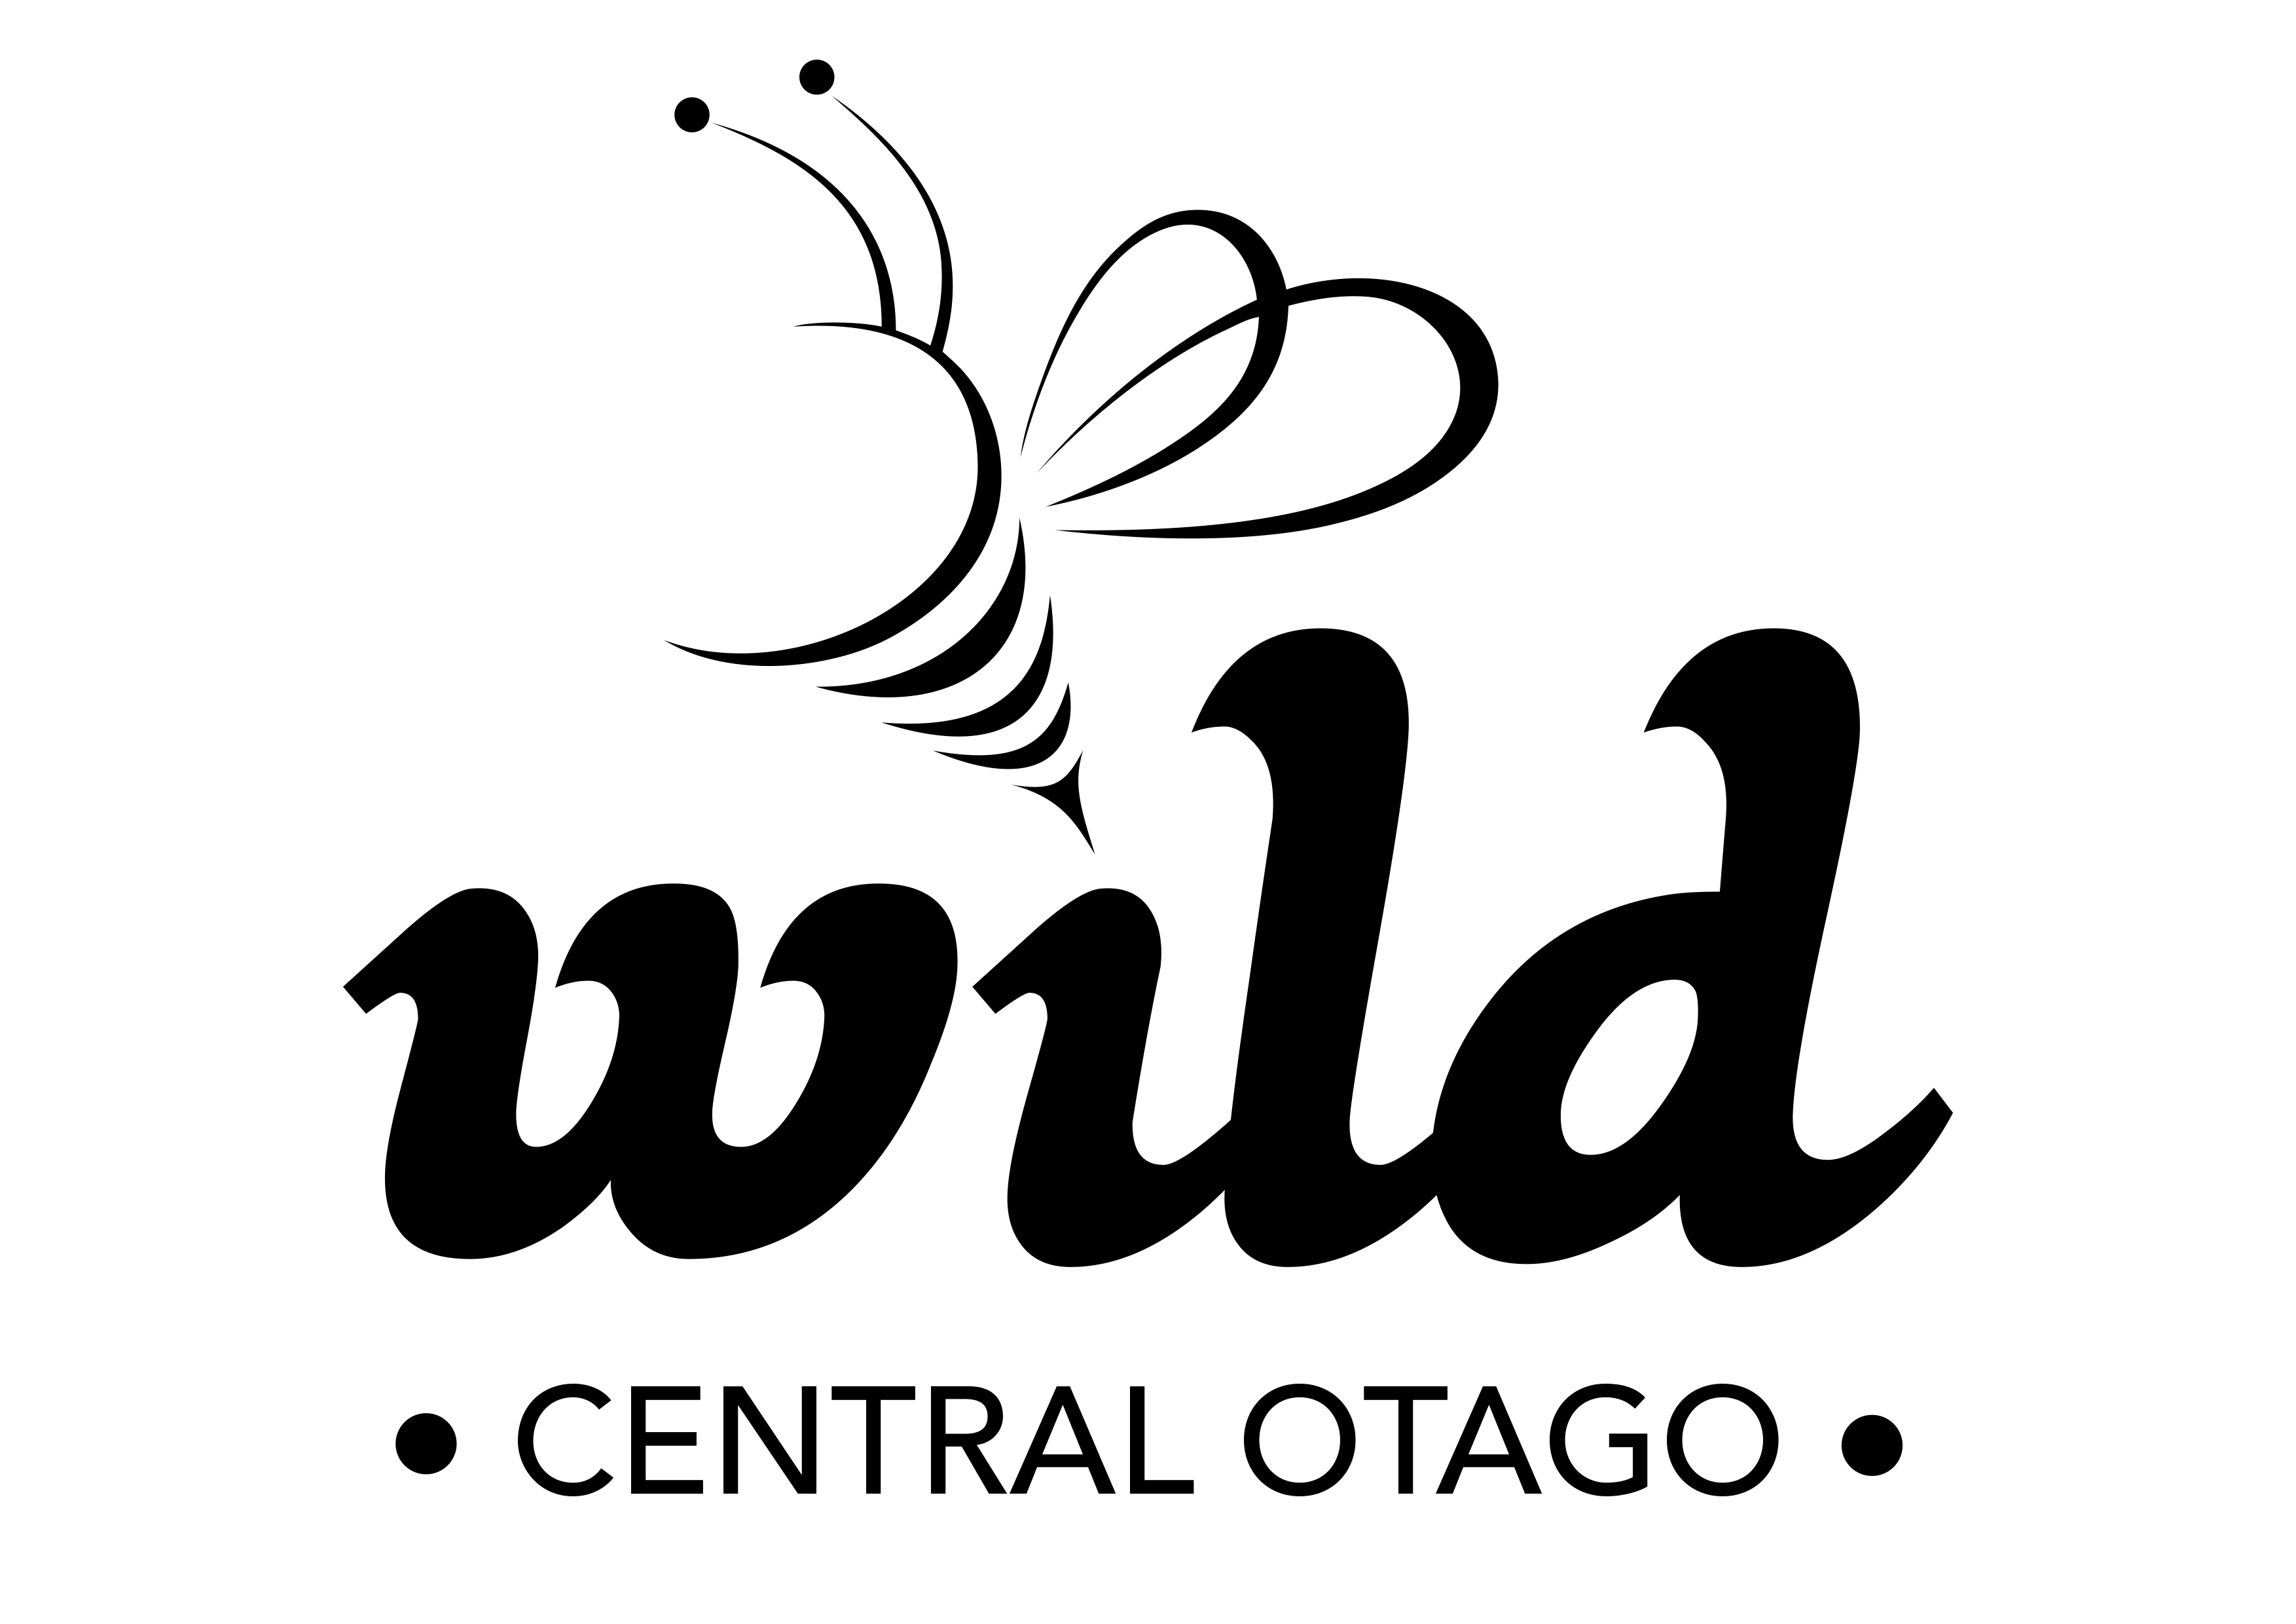 
Wild Central Otago Honey